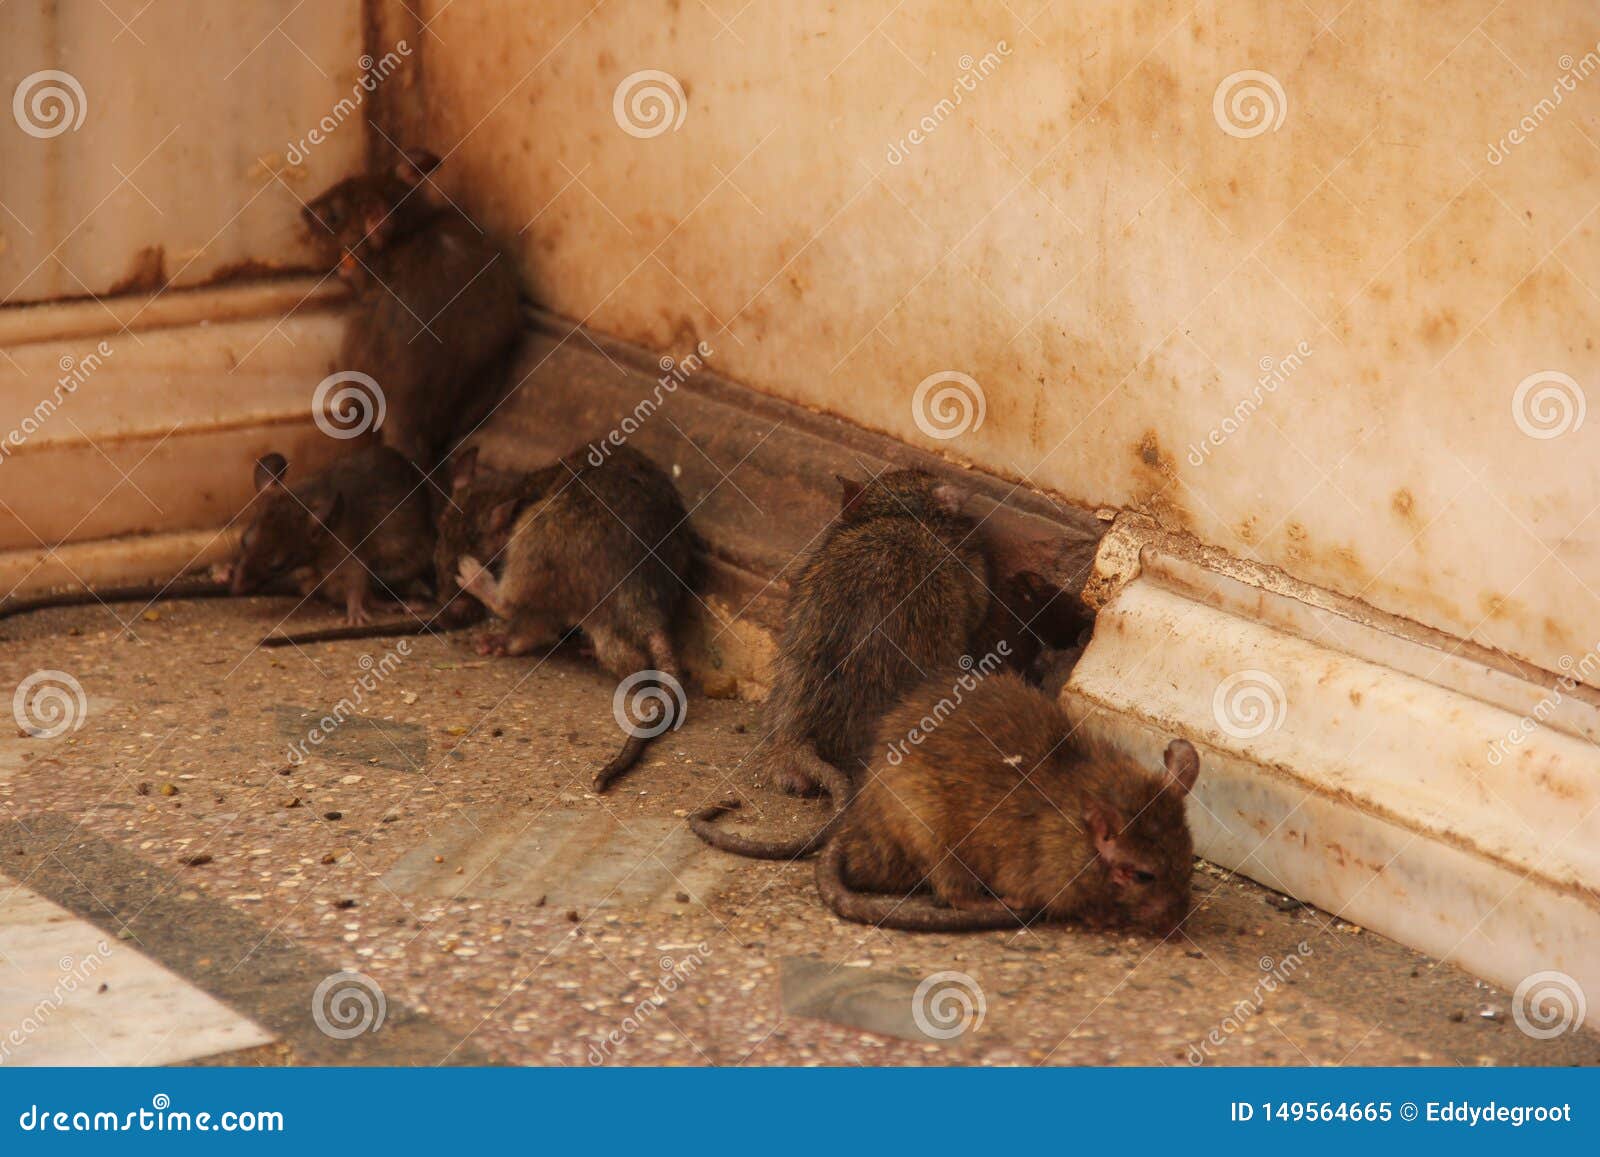 rats at the karni mata temple